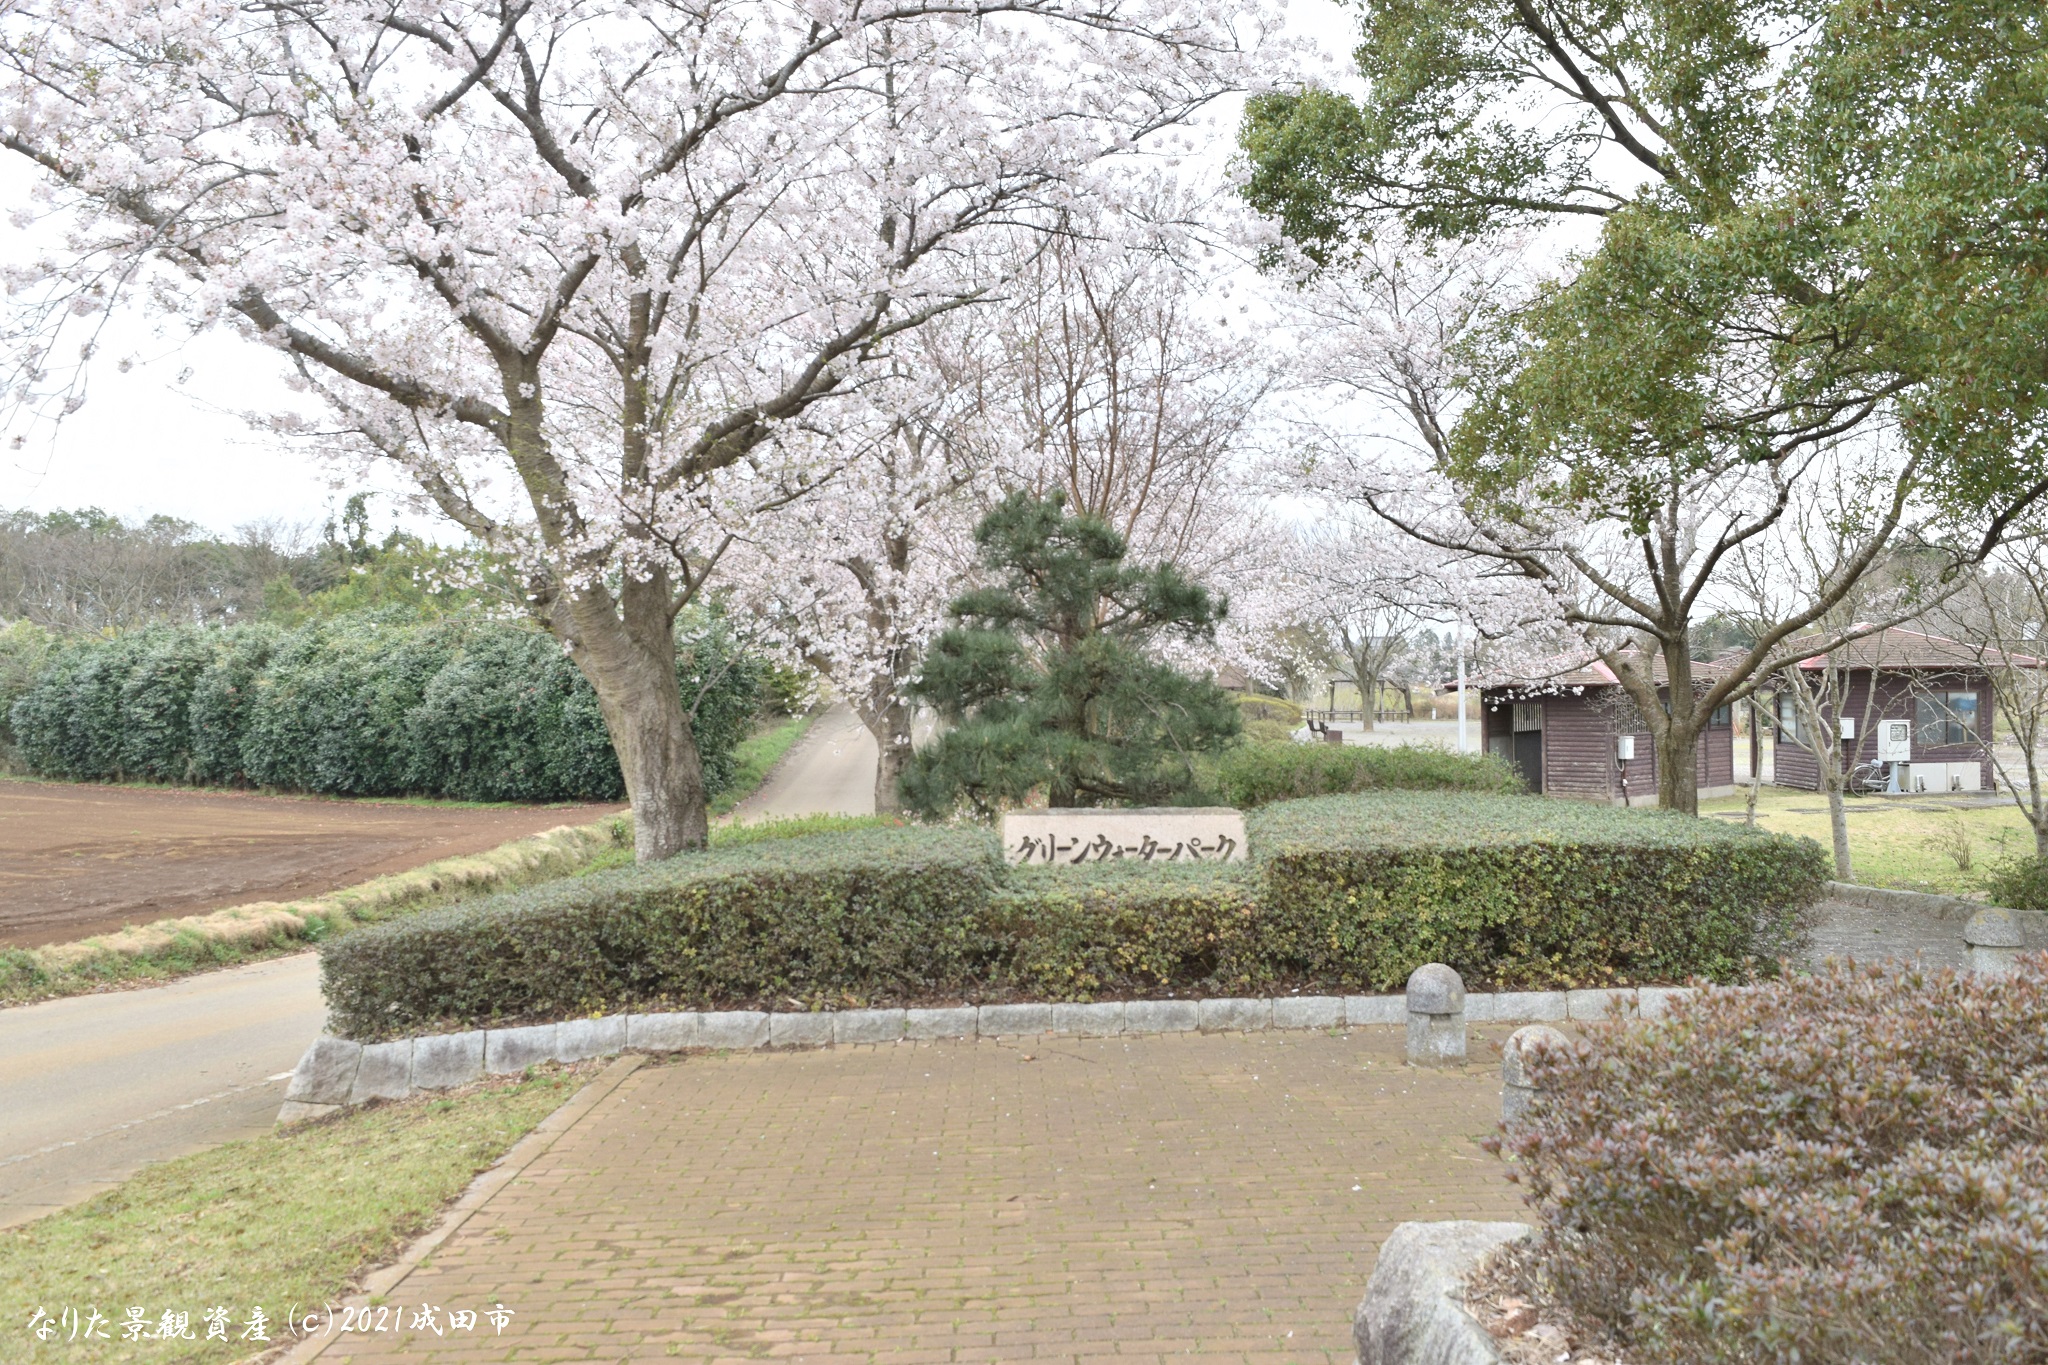 グリーンウォーターパークと桜の景観写真1